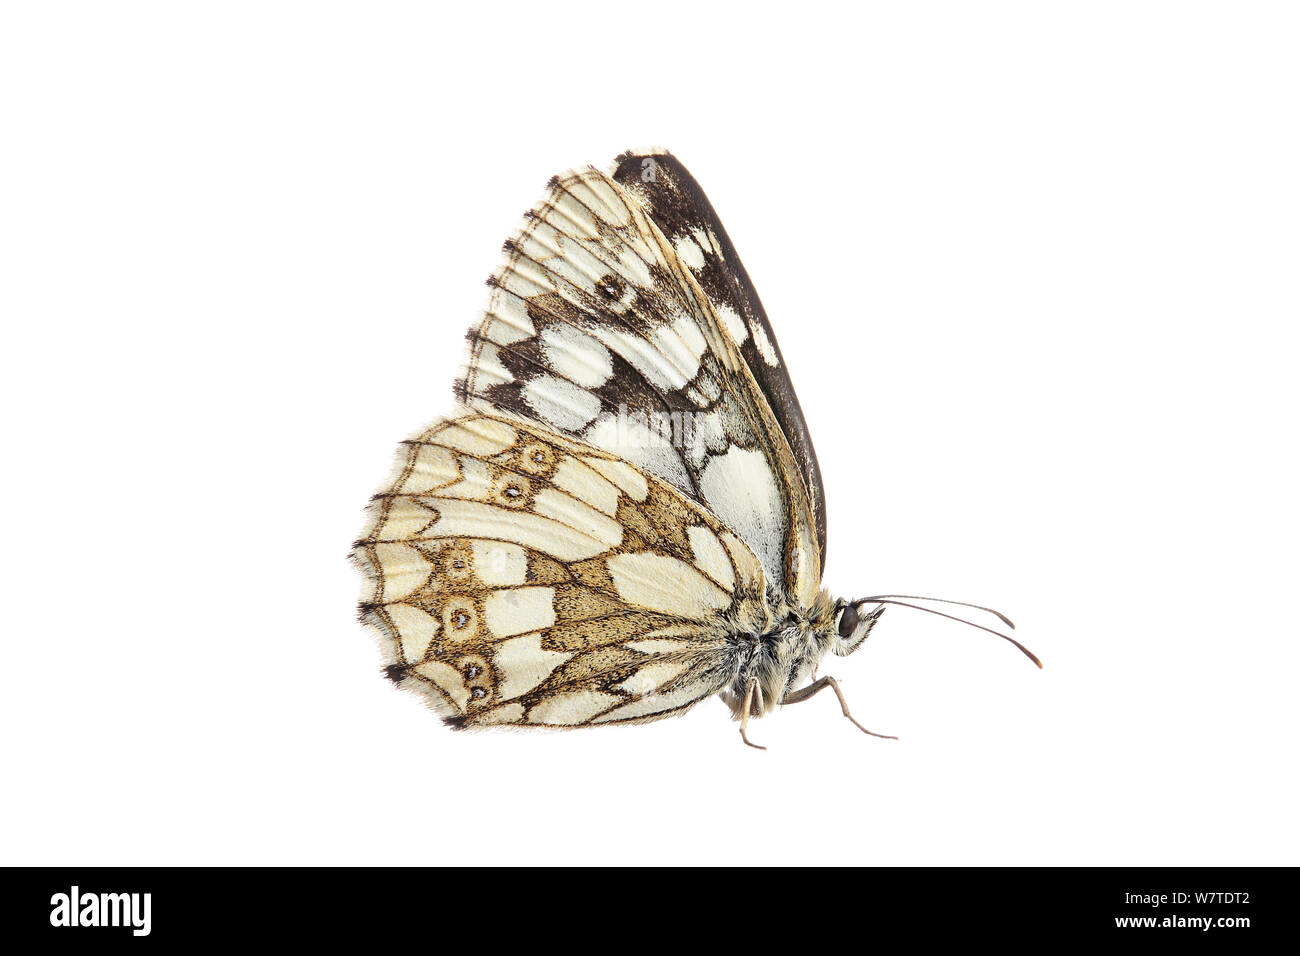 Papillon blanc marbré (Melanargia galathea) Barnt Green, Worcestershire, Royaume-Uni, juillet. Projet d'Meetyourneighbors.net Banque D'Images